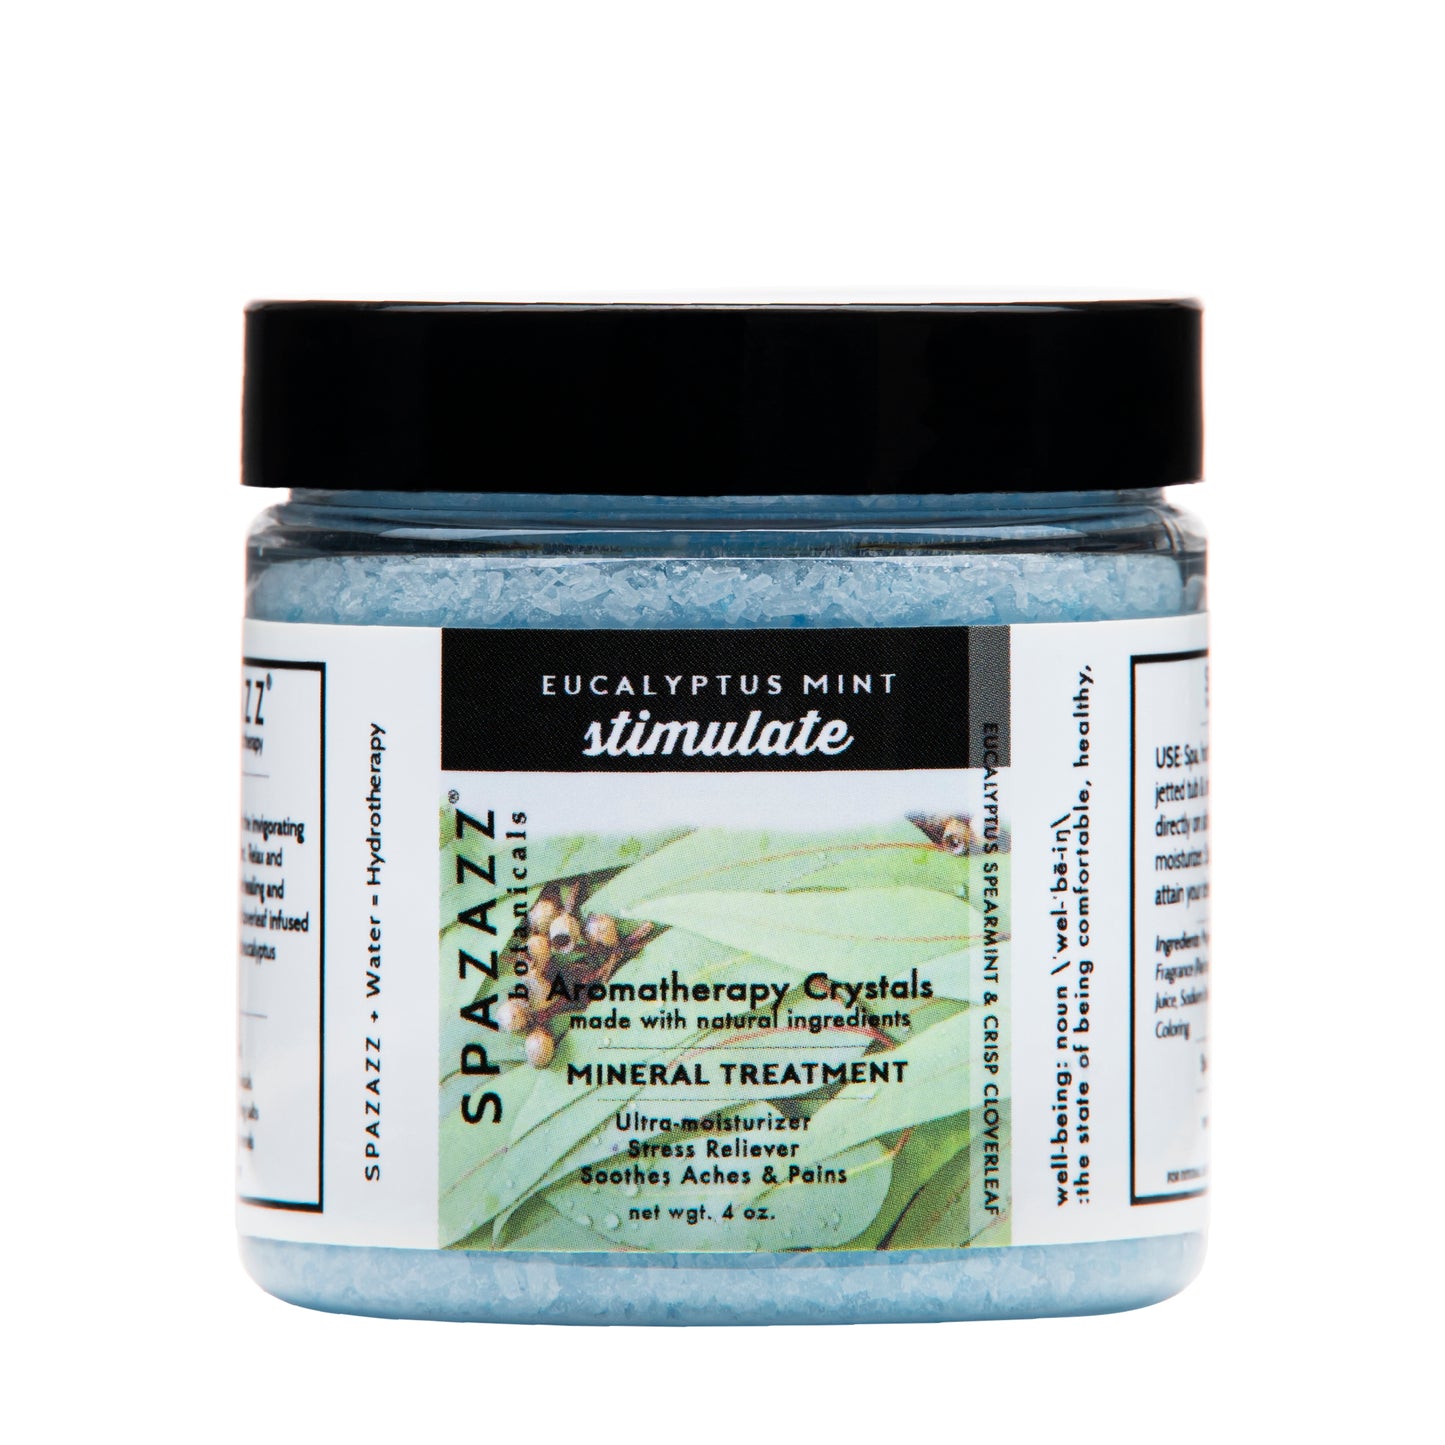 Eucalyptus Mint - Stimulate